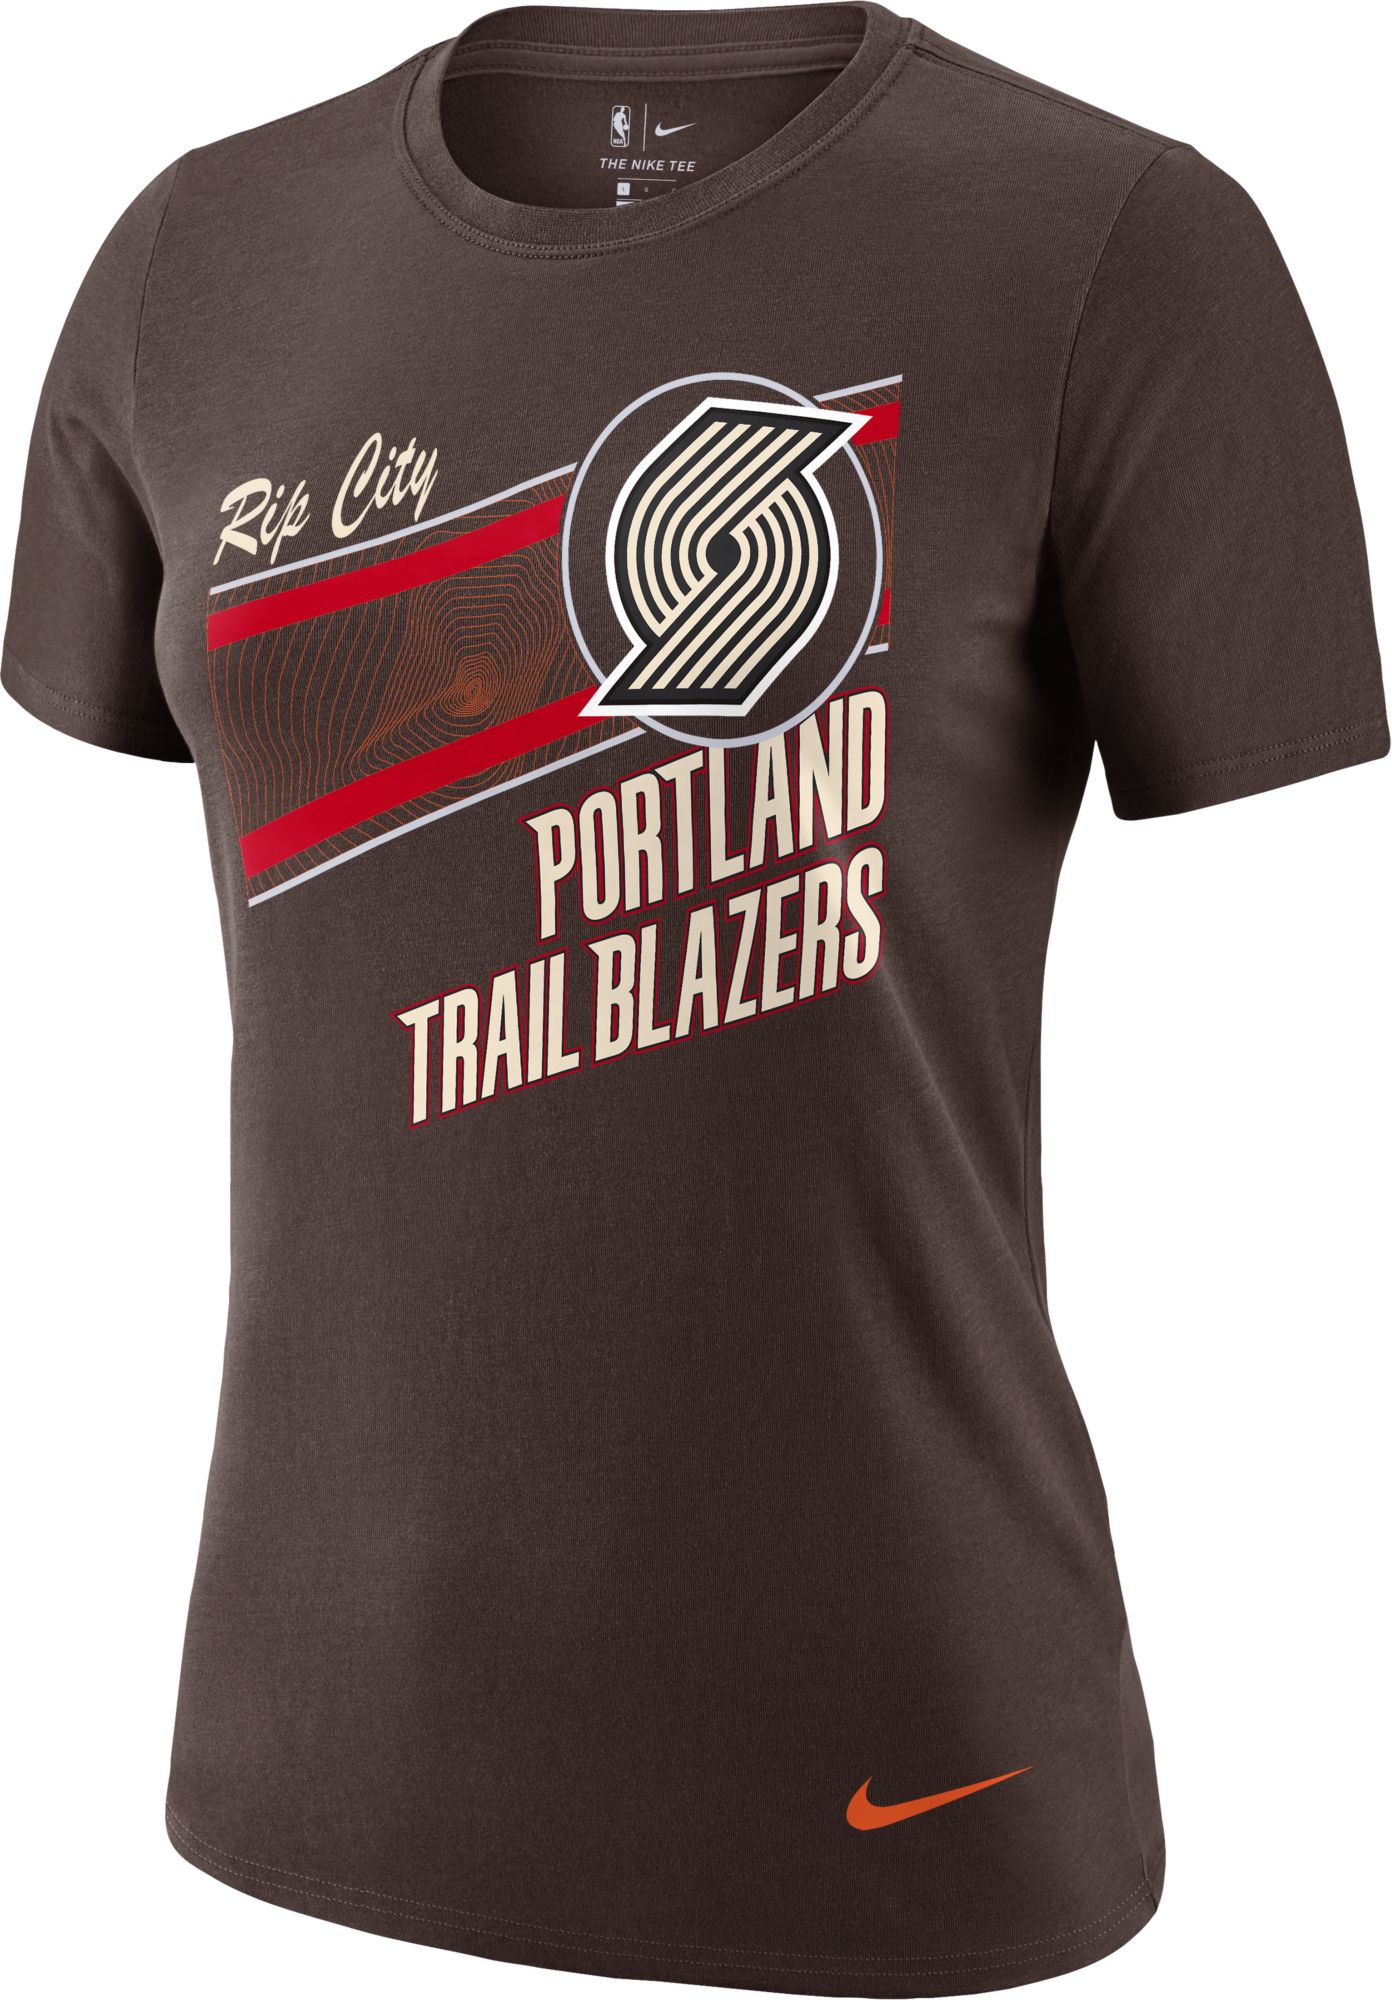 Portland Trail Blazers Shirts, Trail Blazers T-Shirt, Tees